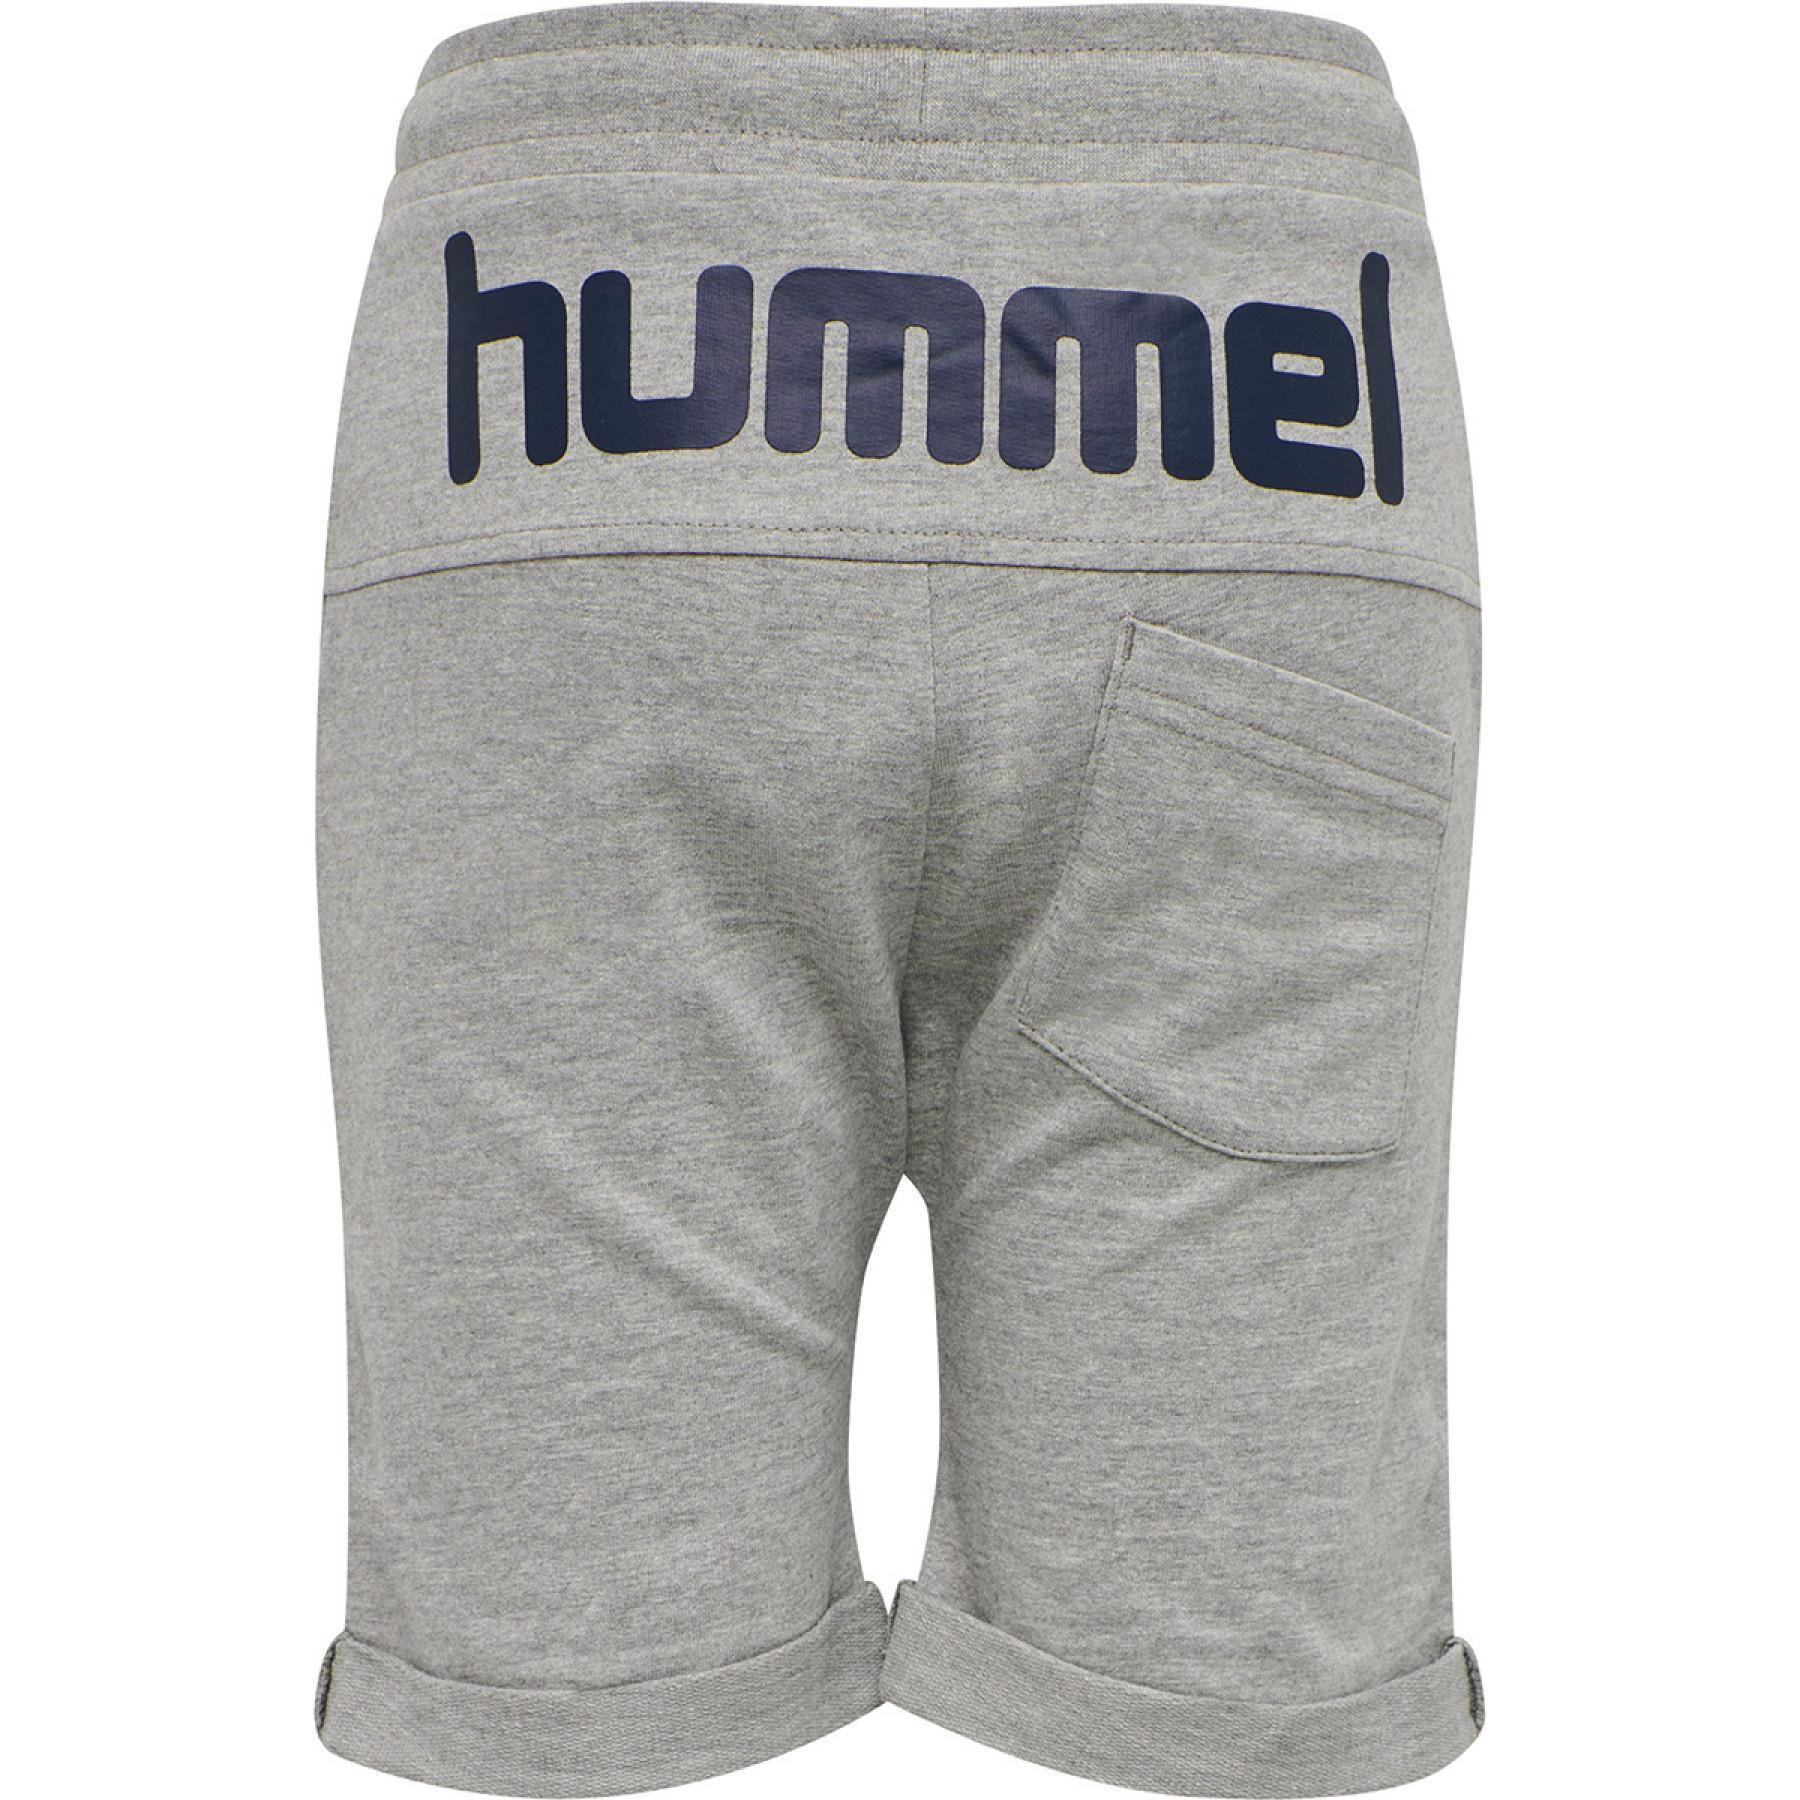 Shorts för barn Hummel hmlflicker